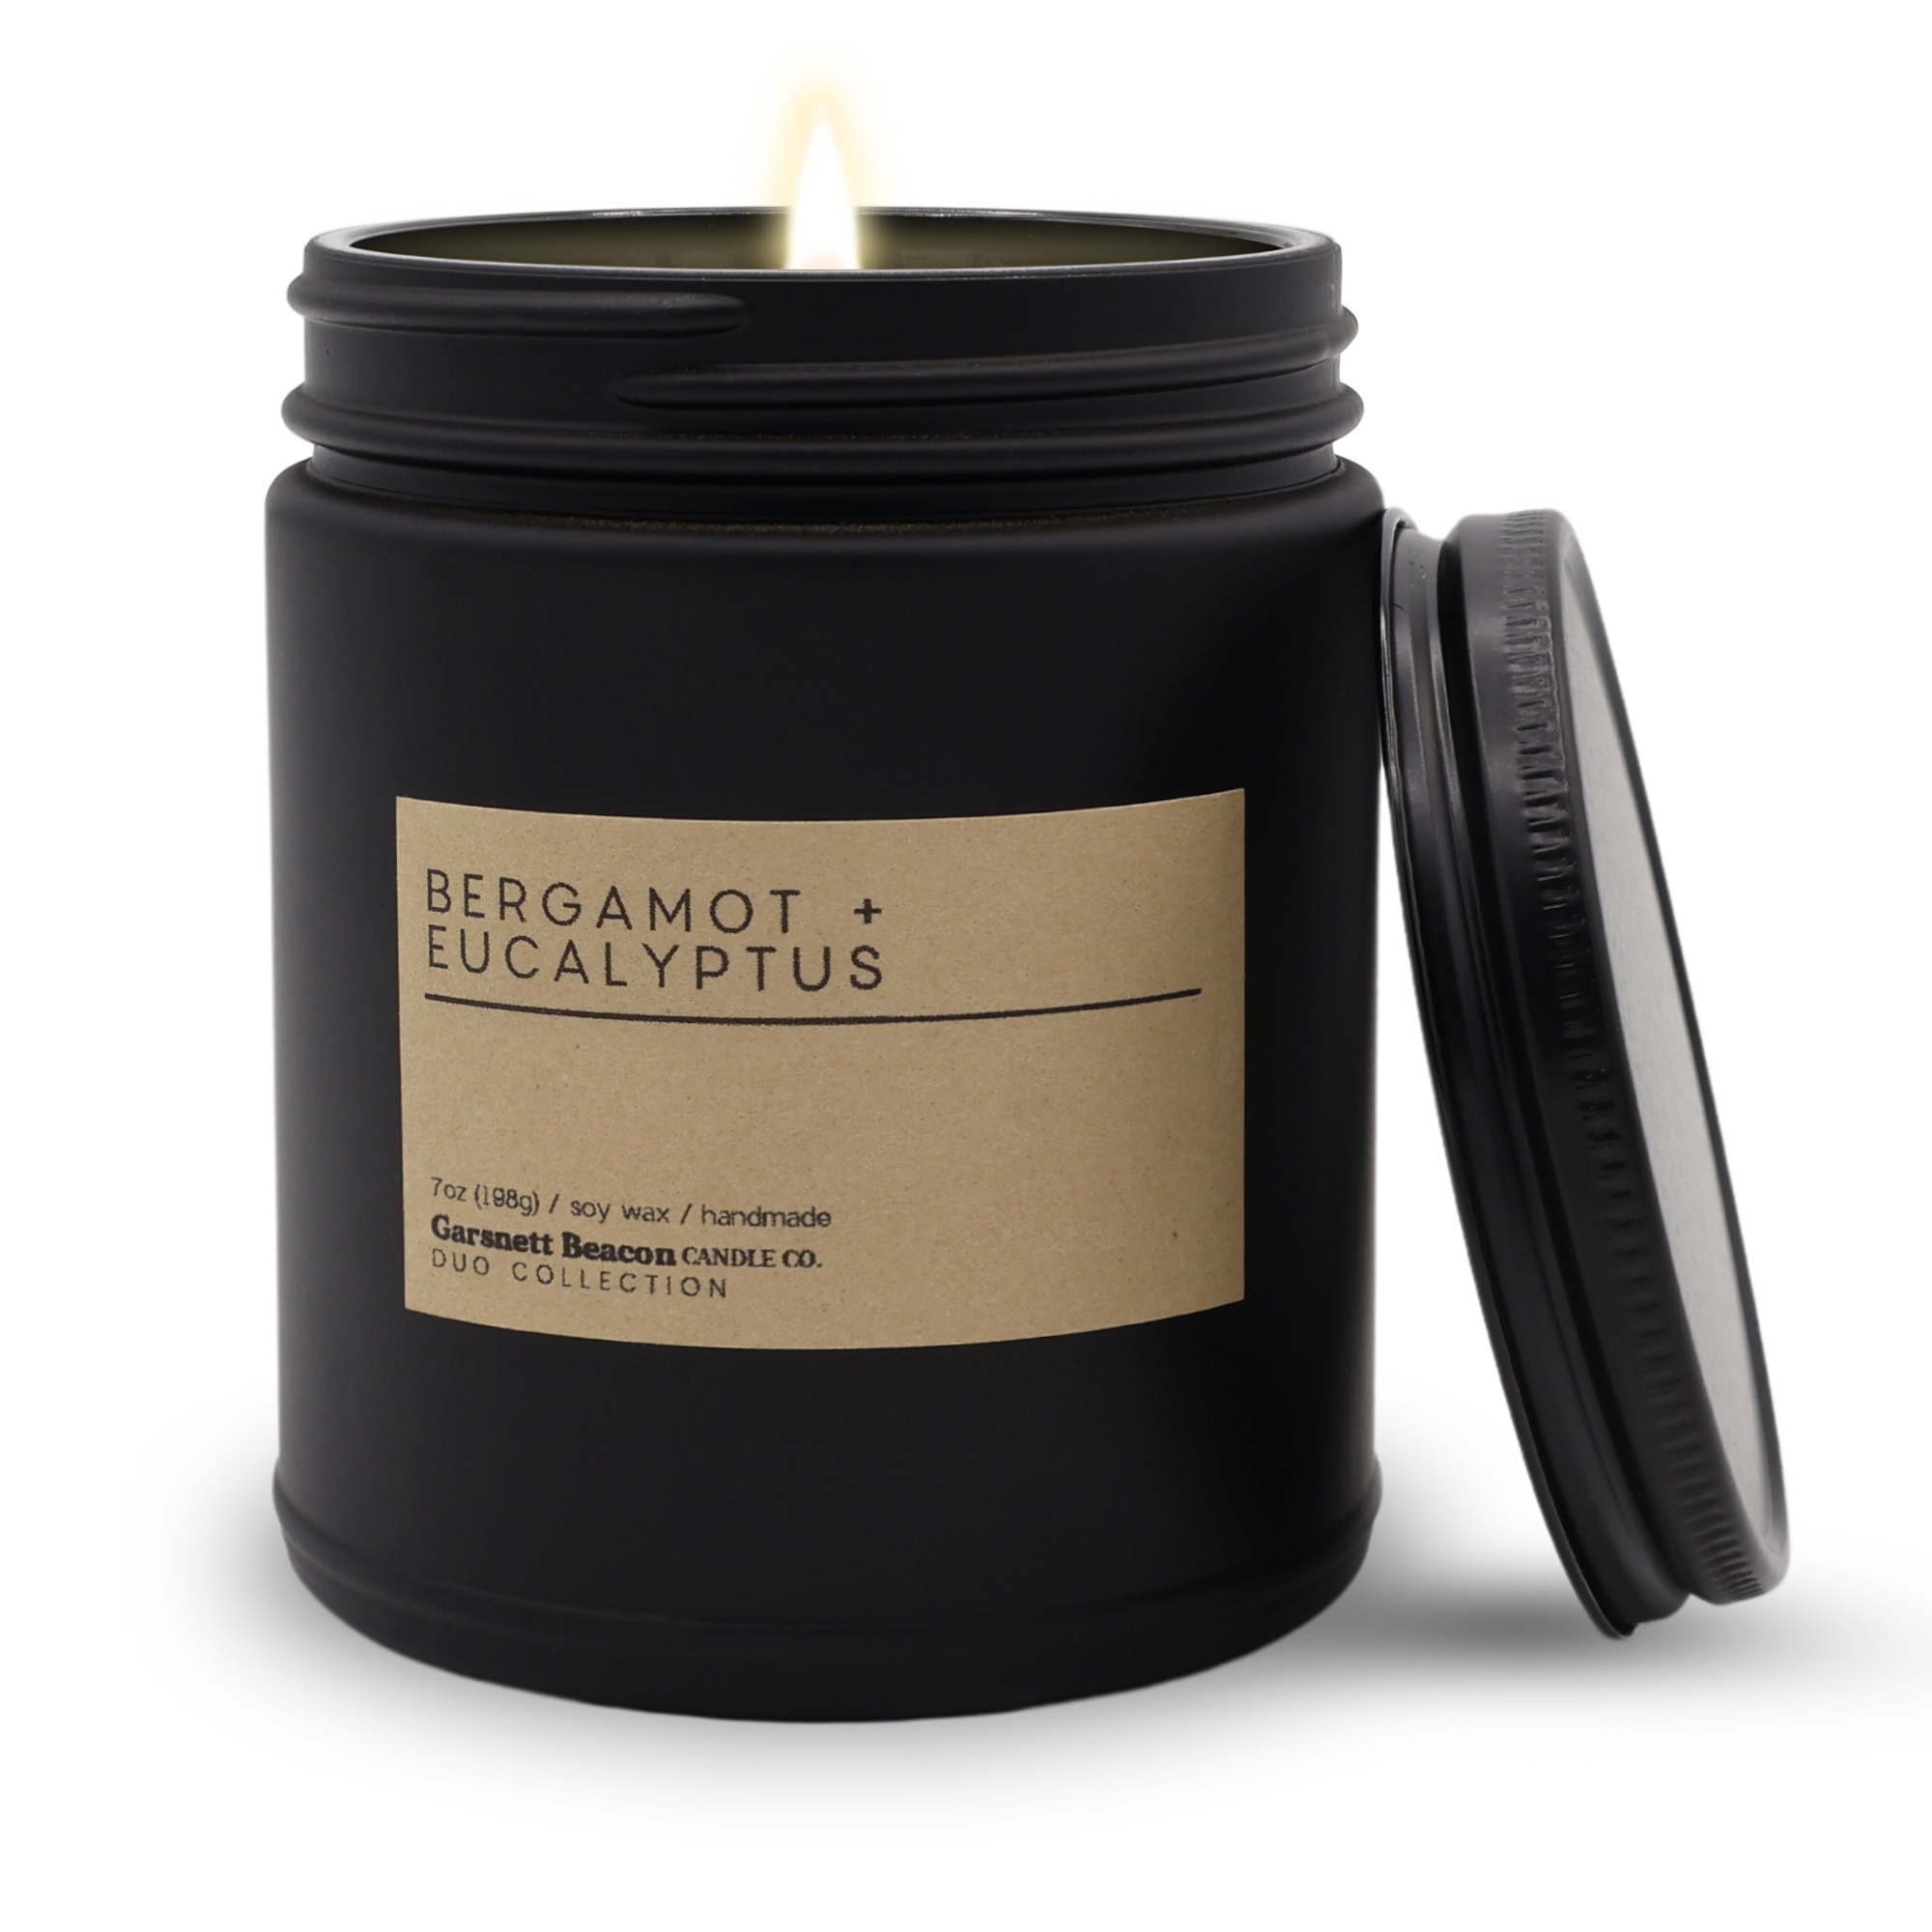 Bergamot + Eucalyptus Luxury Scented Candle